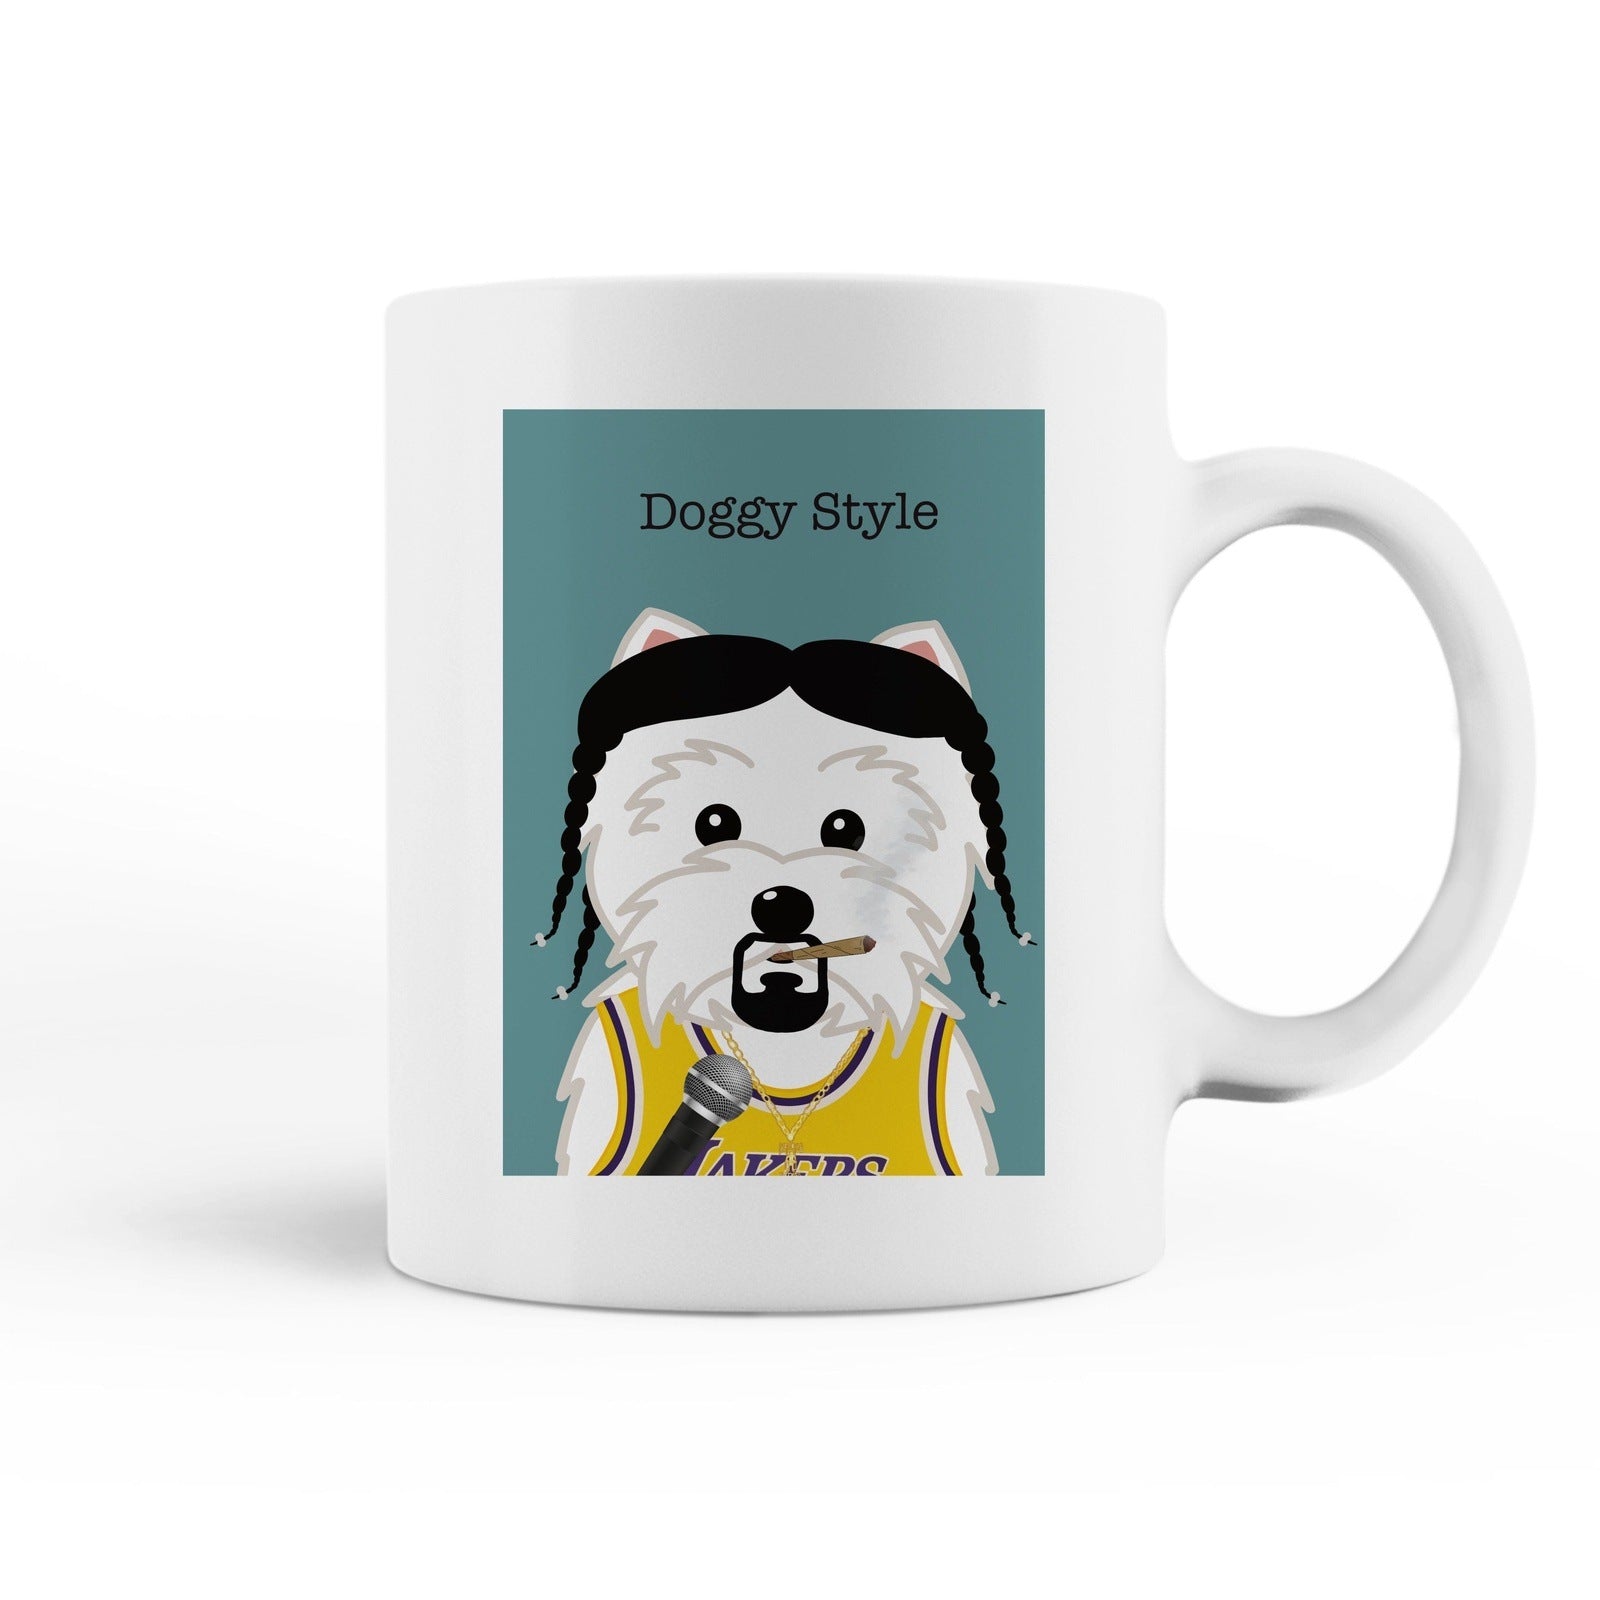 Doggy Style Mug